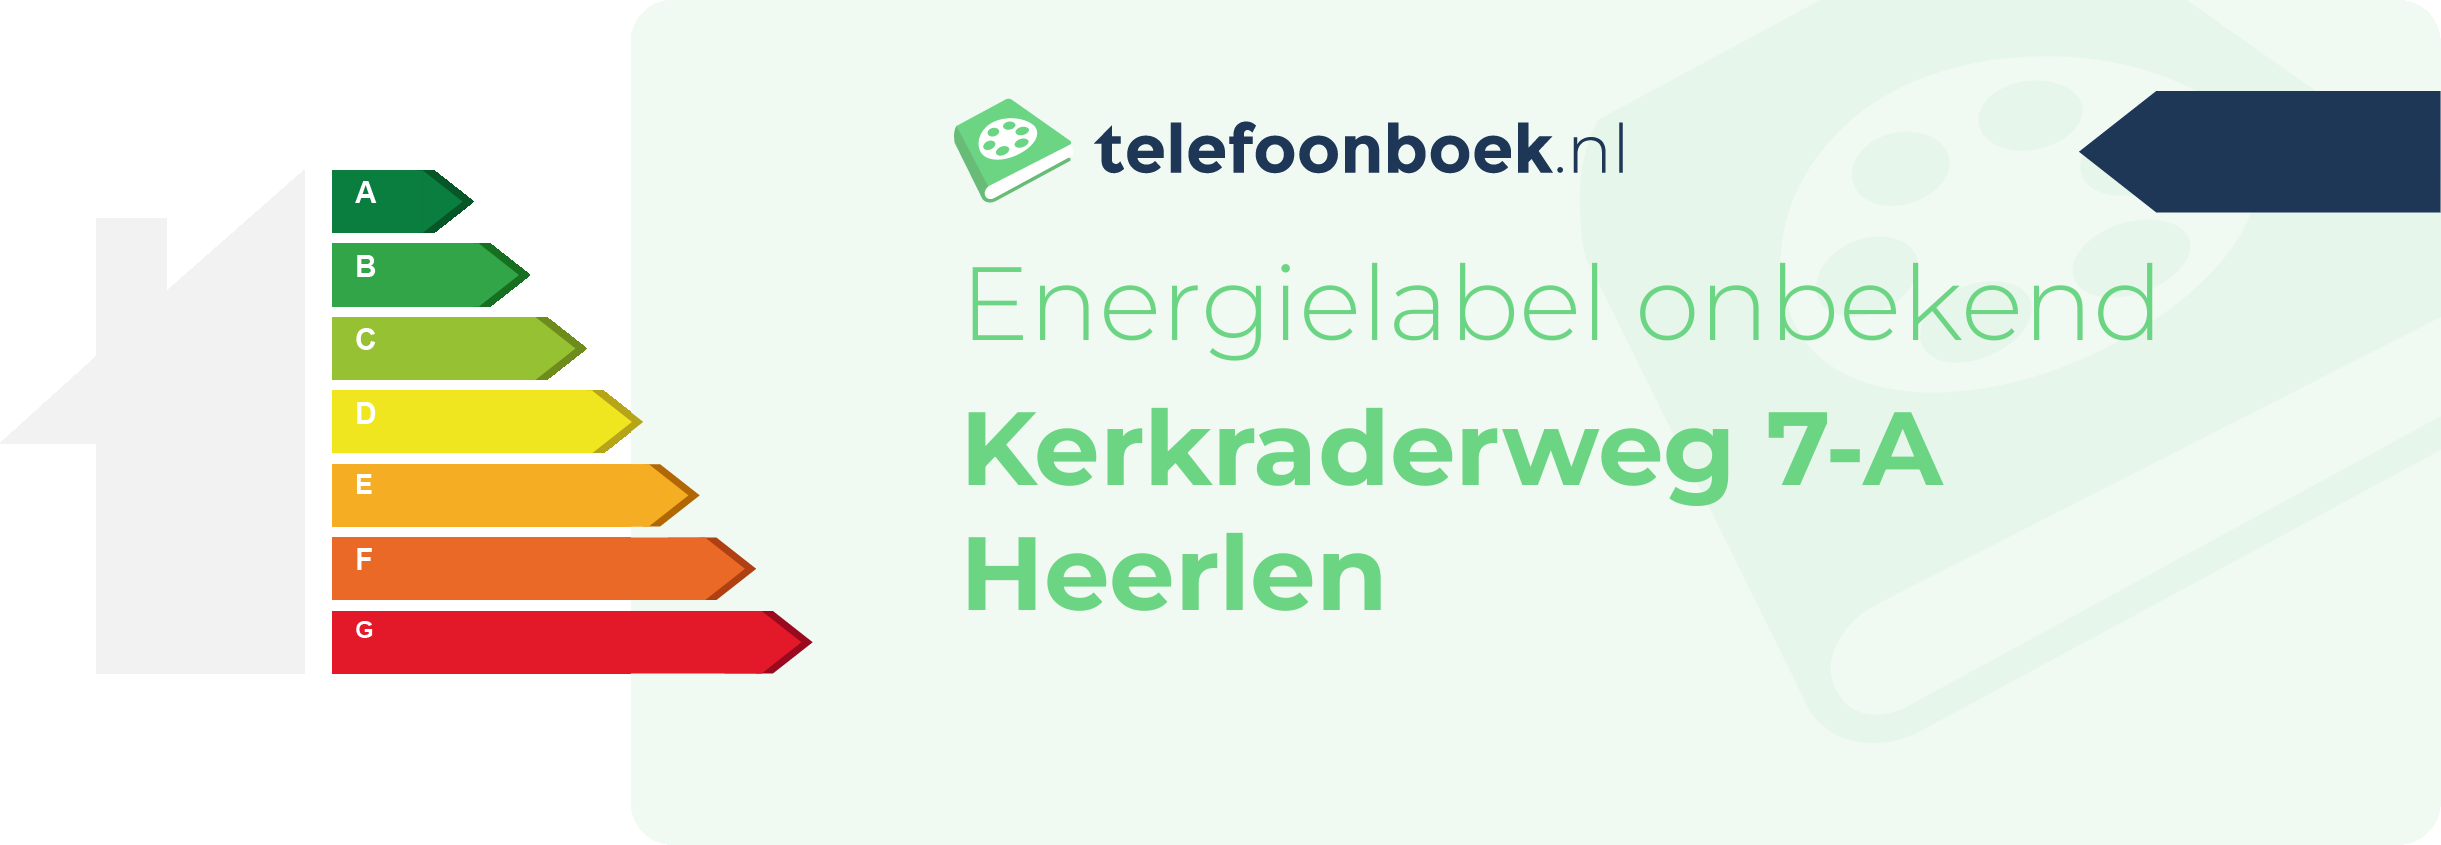 Energielabel Kerkraderweg 7-A Heerlen